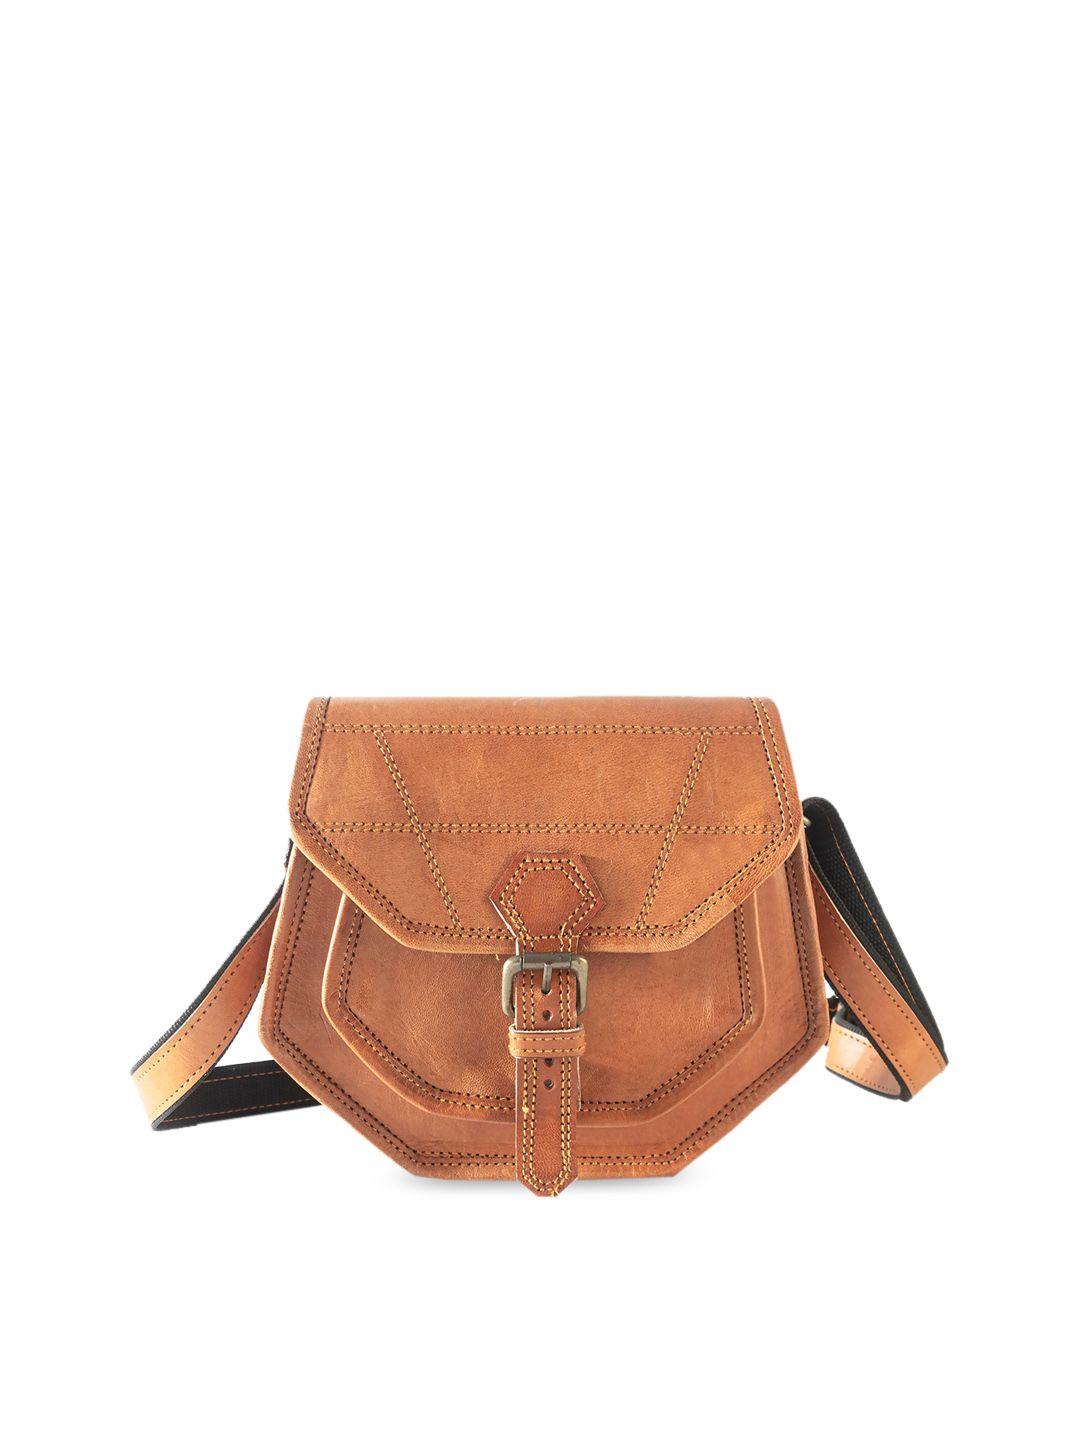 goatter tan leather structured sling bag